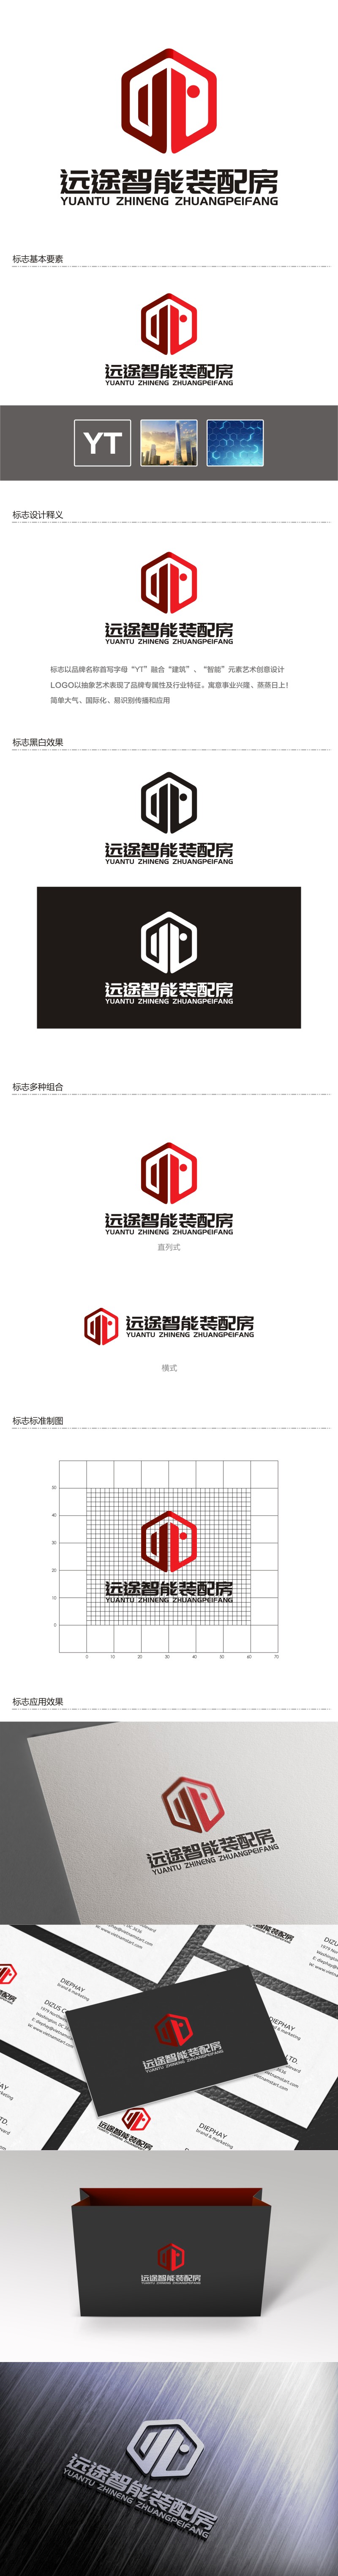 陈国伟的江苏远途智能装配房有限公司logo设计